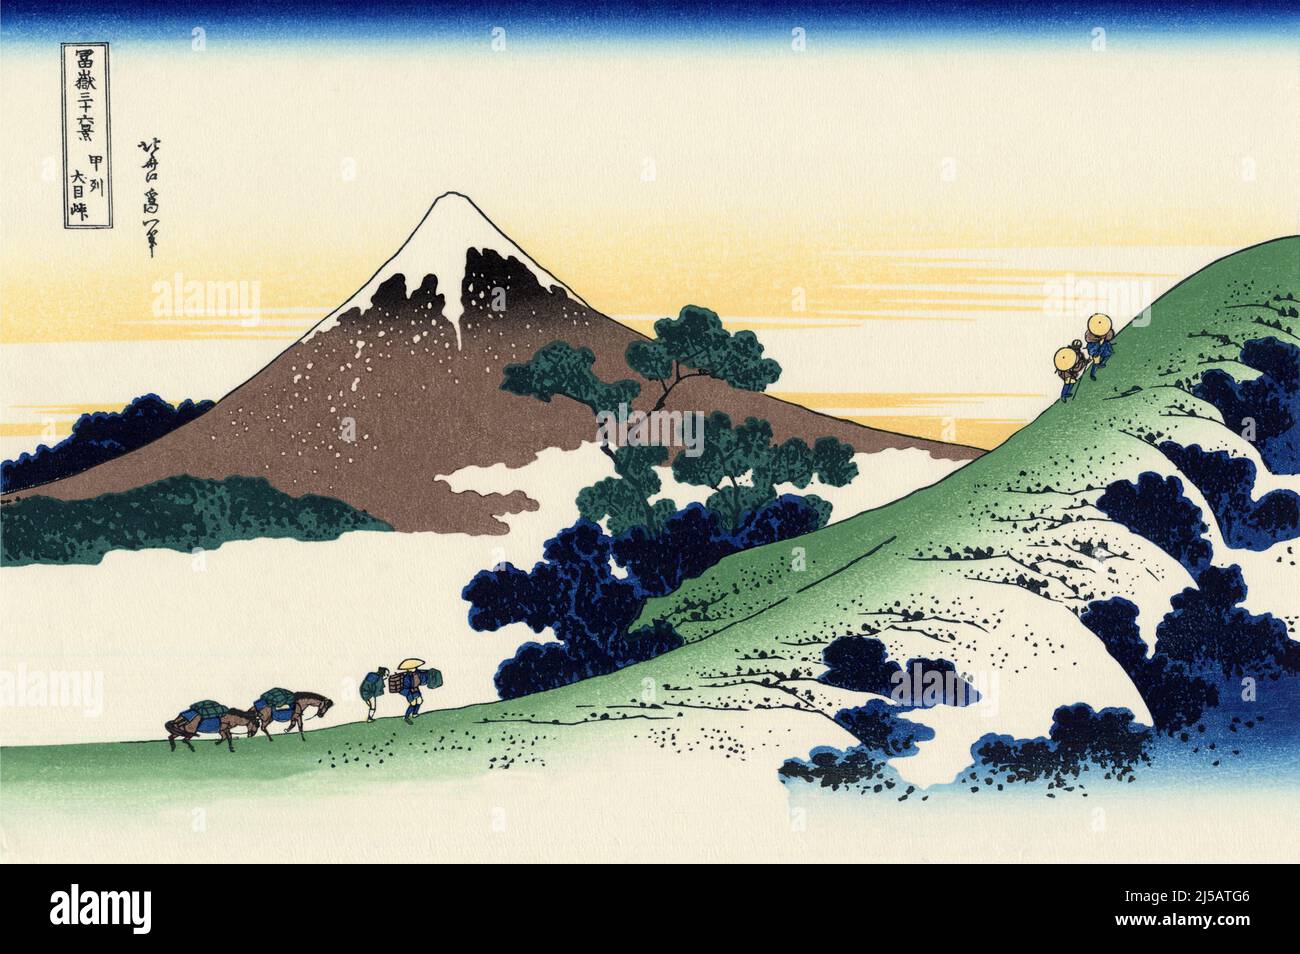 Giappone: «Inume Pass, Koshu». Ukiyo-e stampa in blocco della serie «trentasei viste del Monte Fuji» di Katsushika Hokusai (31 ottobre 1760 - 10 maggio 1849), 1830. “trentasei viste del Monte Fuji” è una serie di stampe in legno realizzate dall’artista giapponese Katsushika Hokusai. La serie raffigura il Monte Fuji in stagioni e condizioni meteorologiche diverse da una varietà di luoghi e distanze. Si compone di 46 stampe create tra il 1826 e il 1833. I primi 36 sono stati inclusi nella pubblicazione originale e, a causa della loro popolarità, altri 10 sono stati aggiunti dopo la pubblicazione originale. Foto Stock